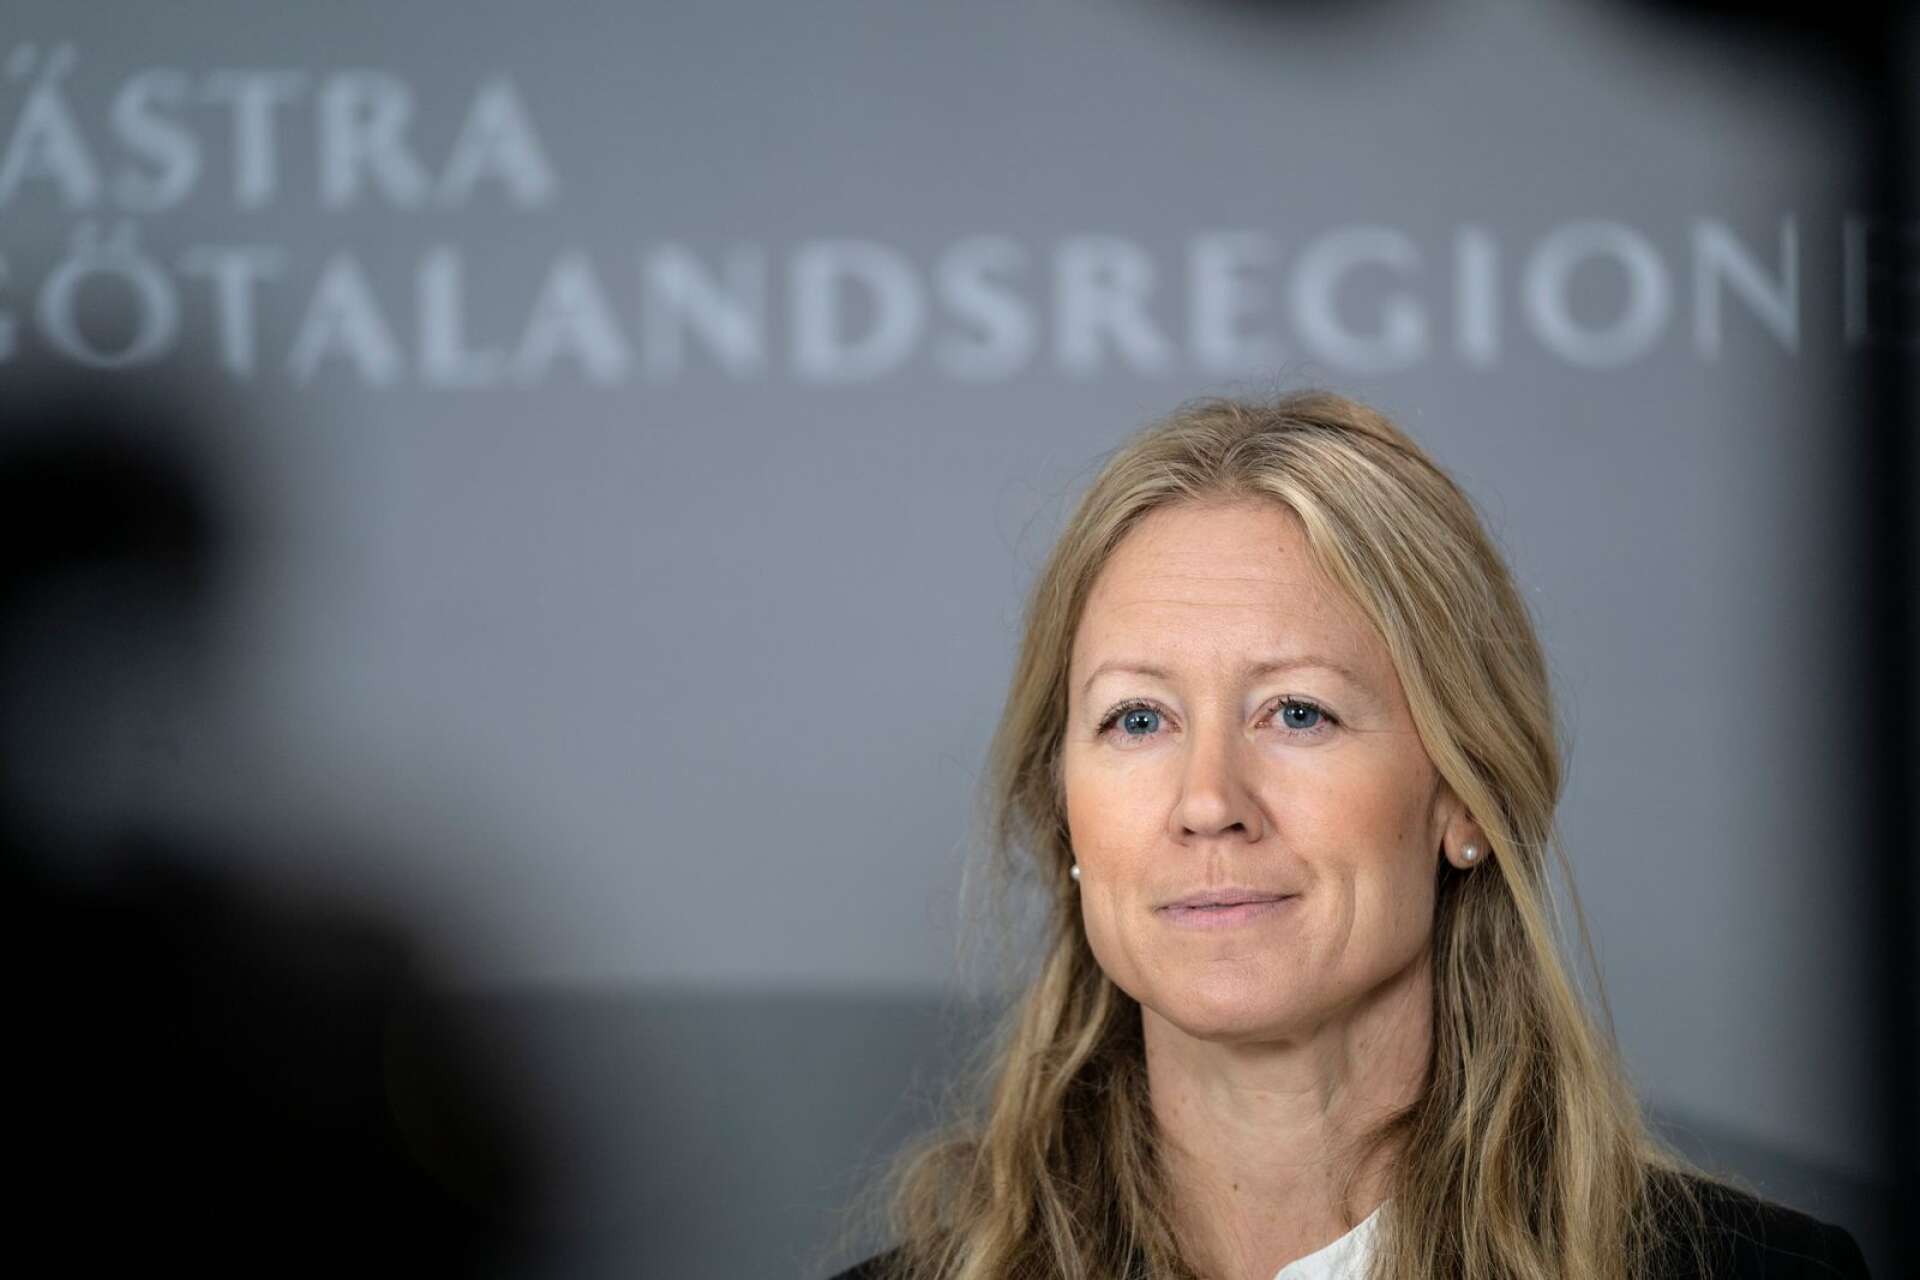 Västra Götalandsregionens vaccinationssamordnare Kristine Rygge medverkar vid den digitala presskonferensen.